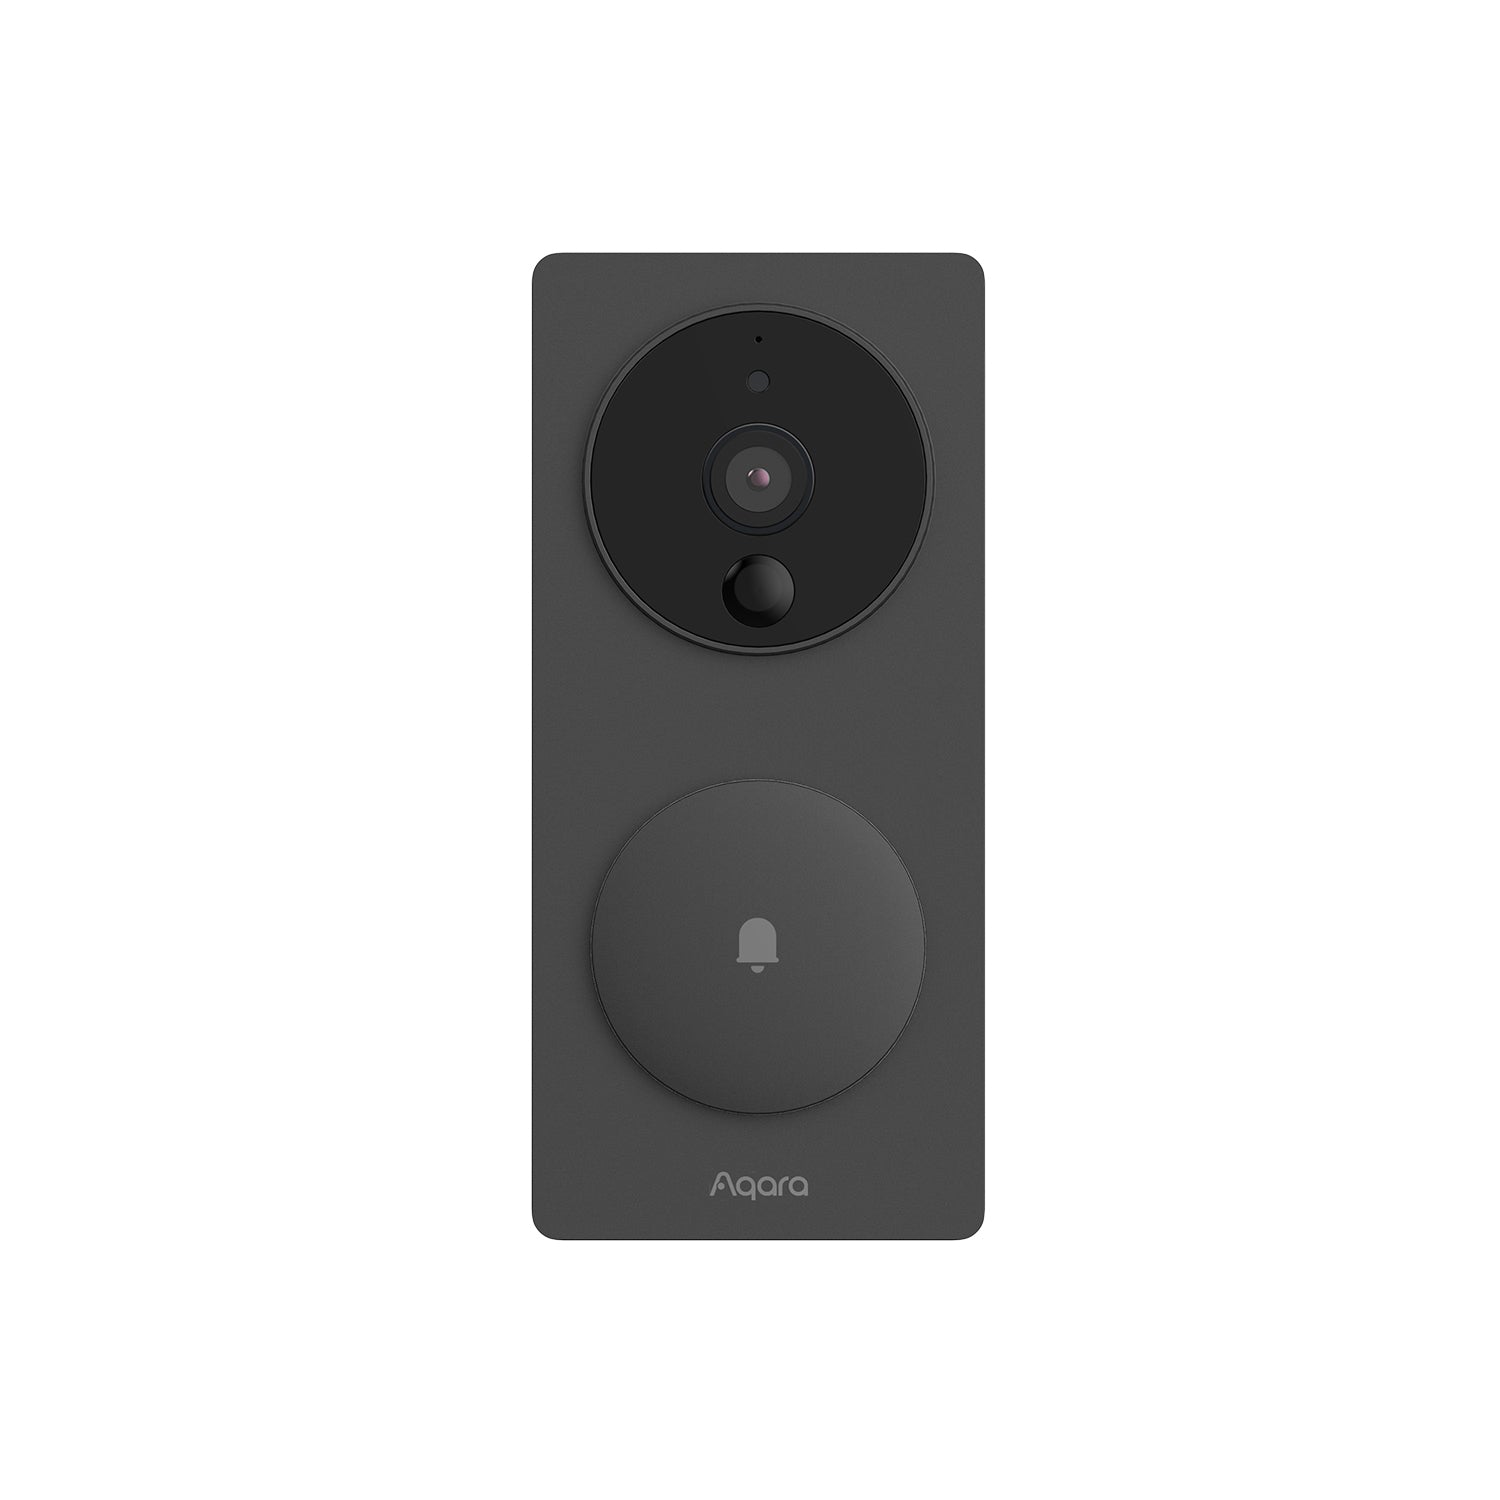 Aqara Smart Video Doorbell G4 Wi-Fi